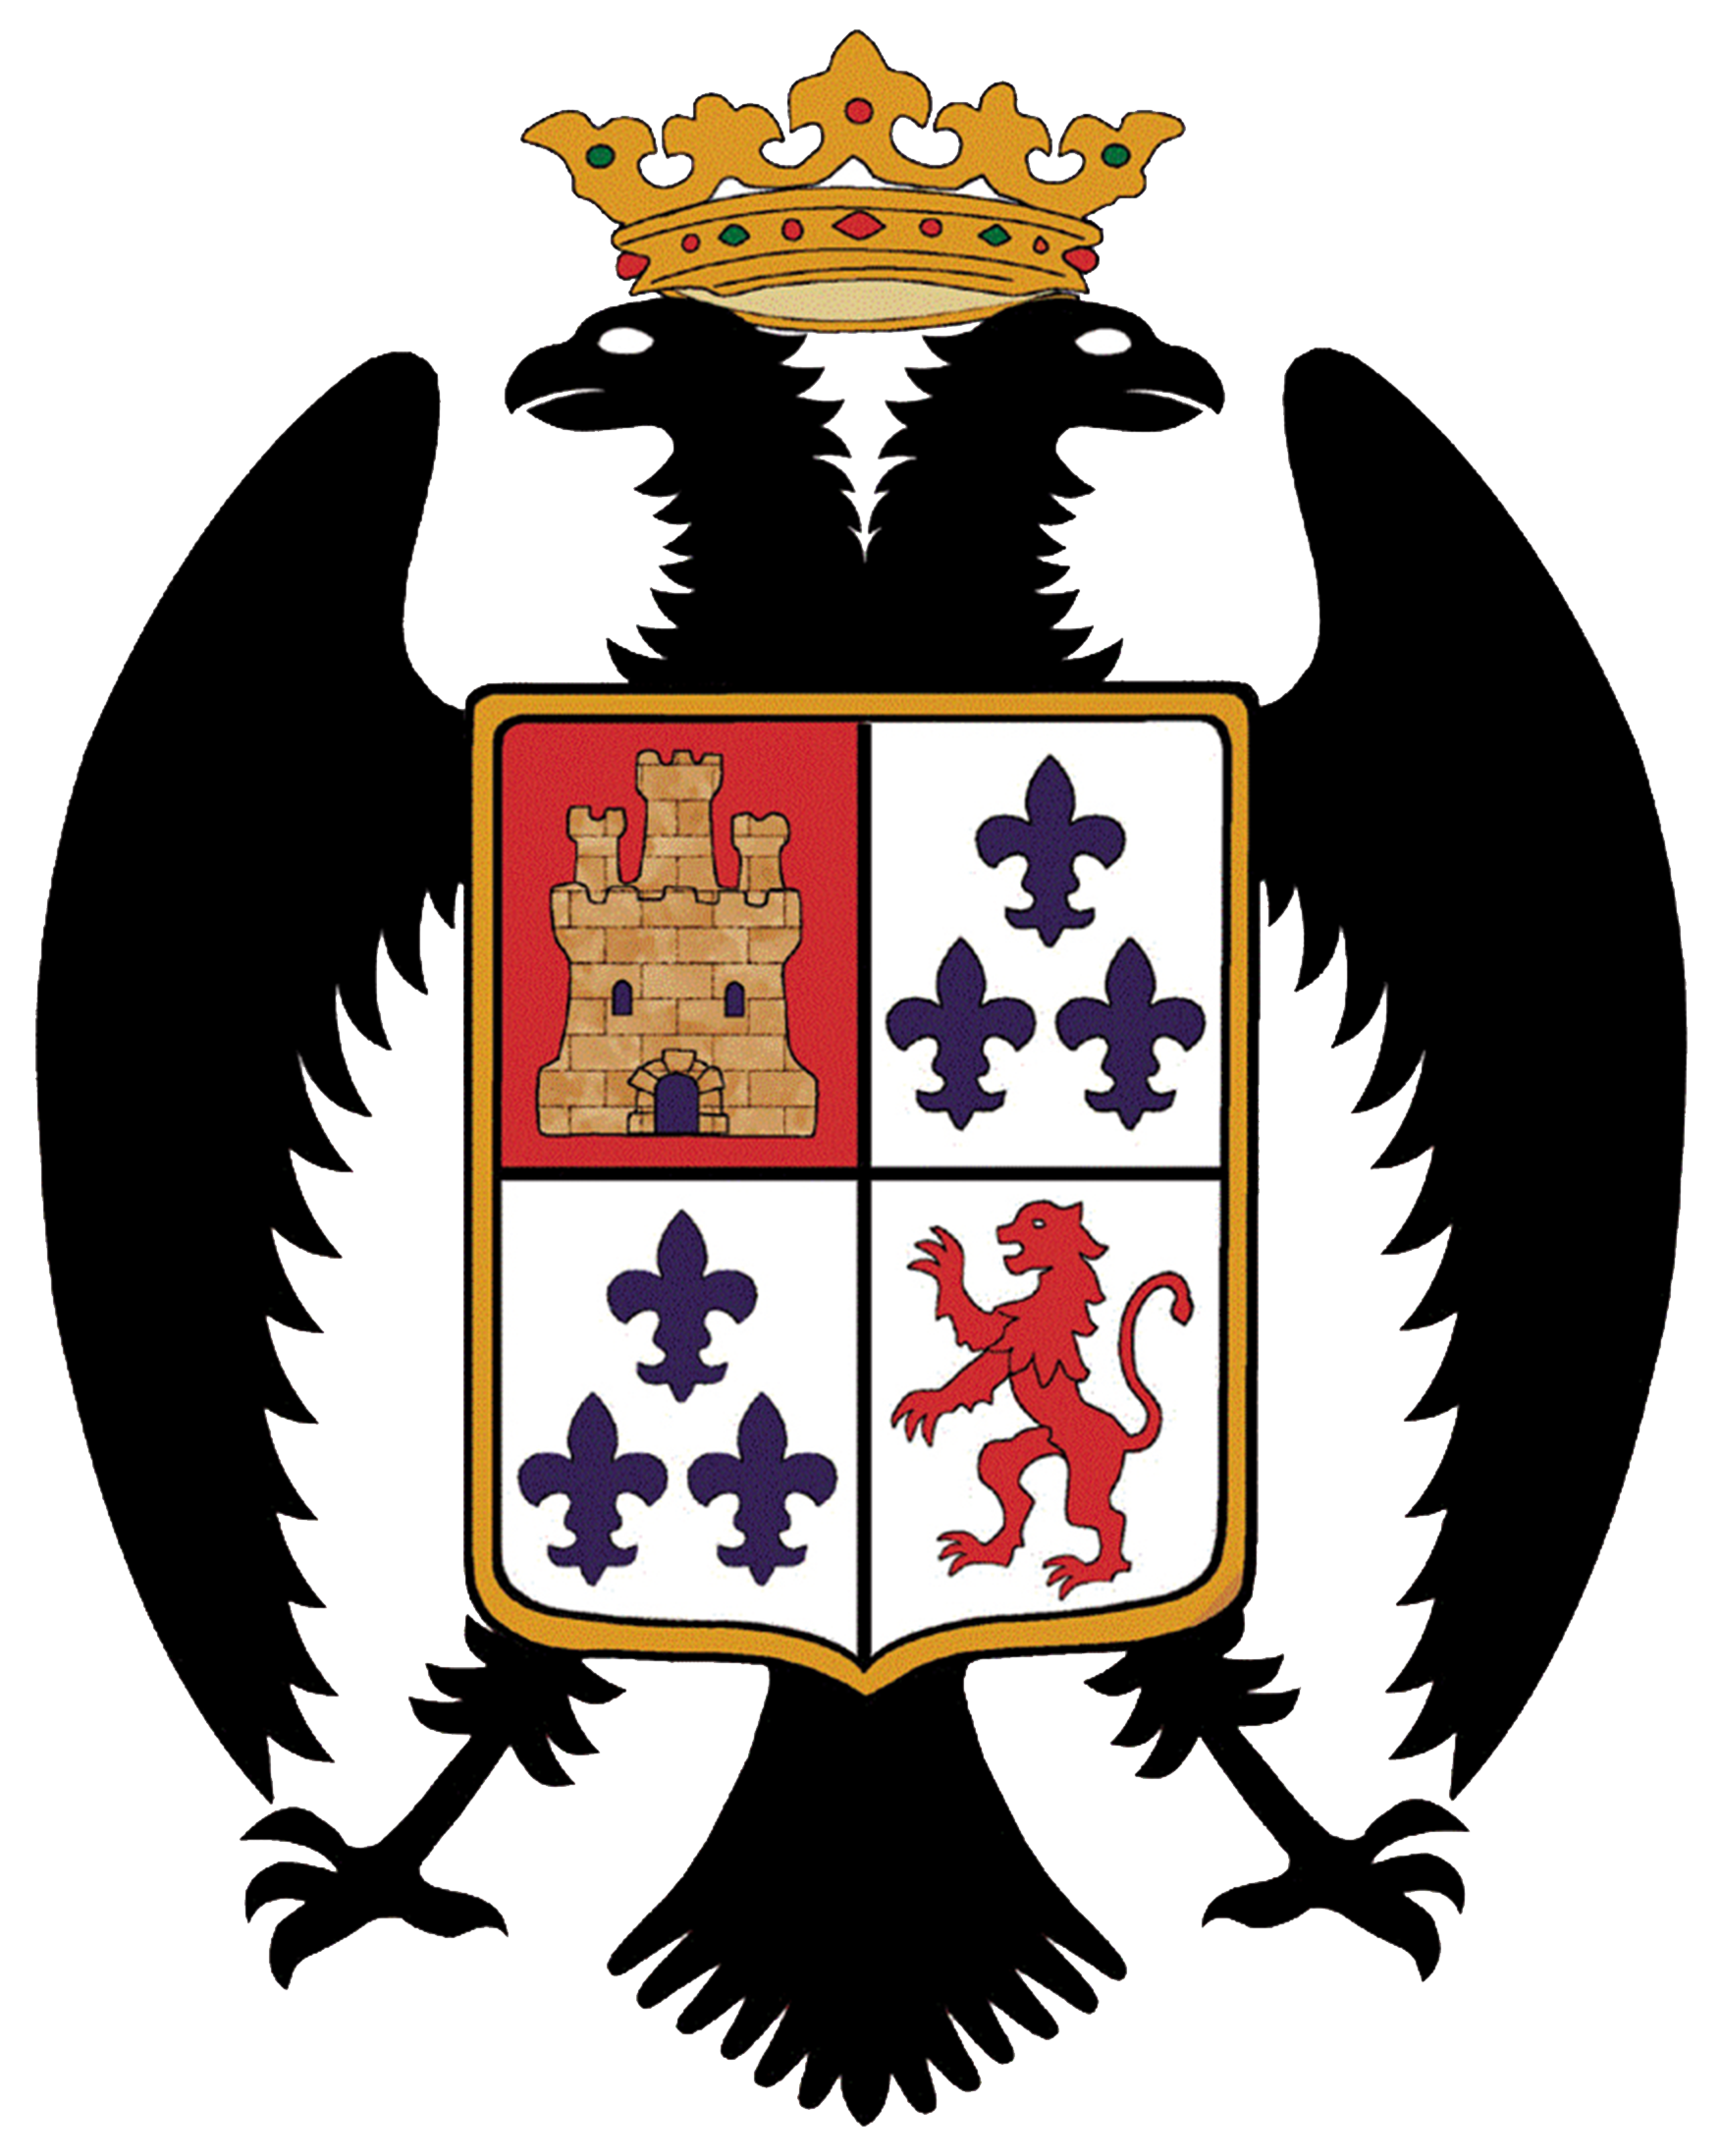 Escudo de Montalbán de Córdoba